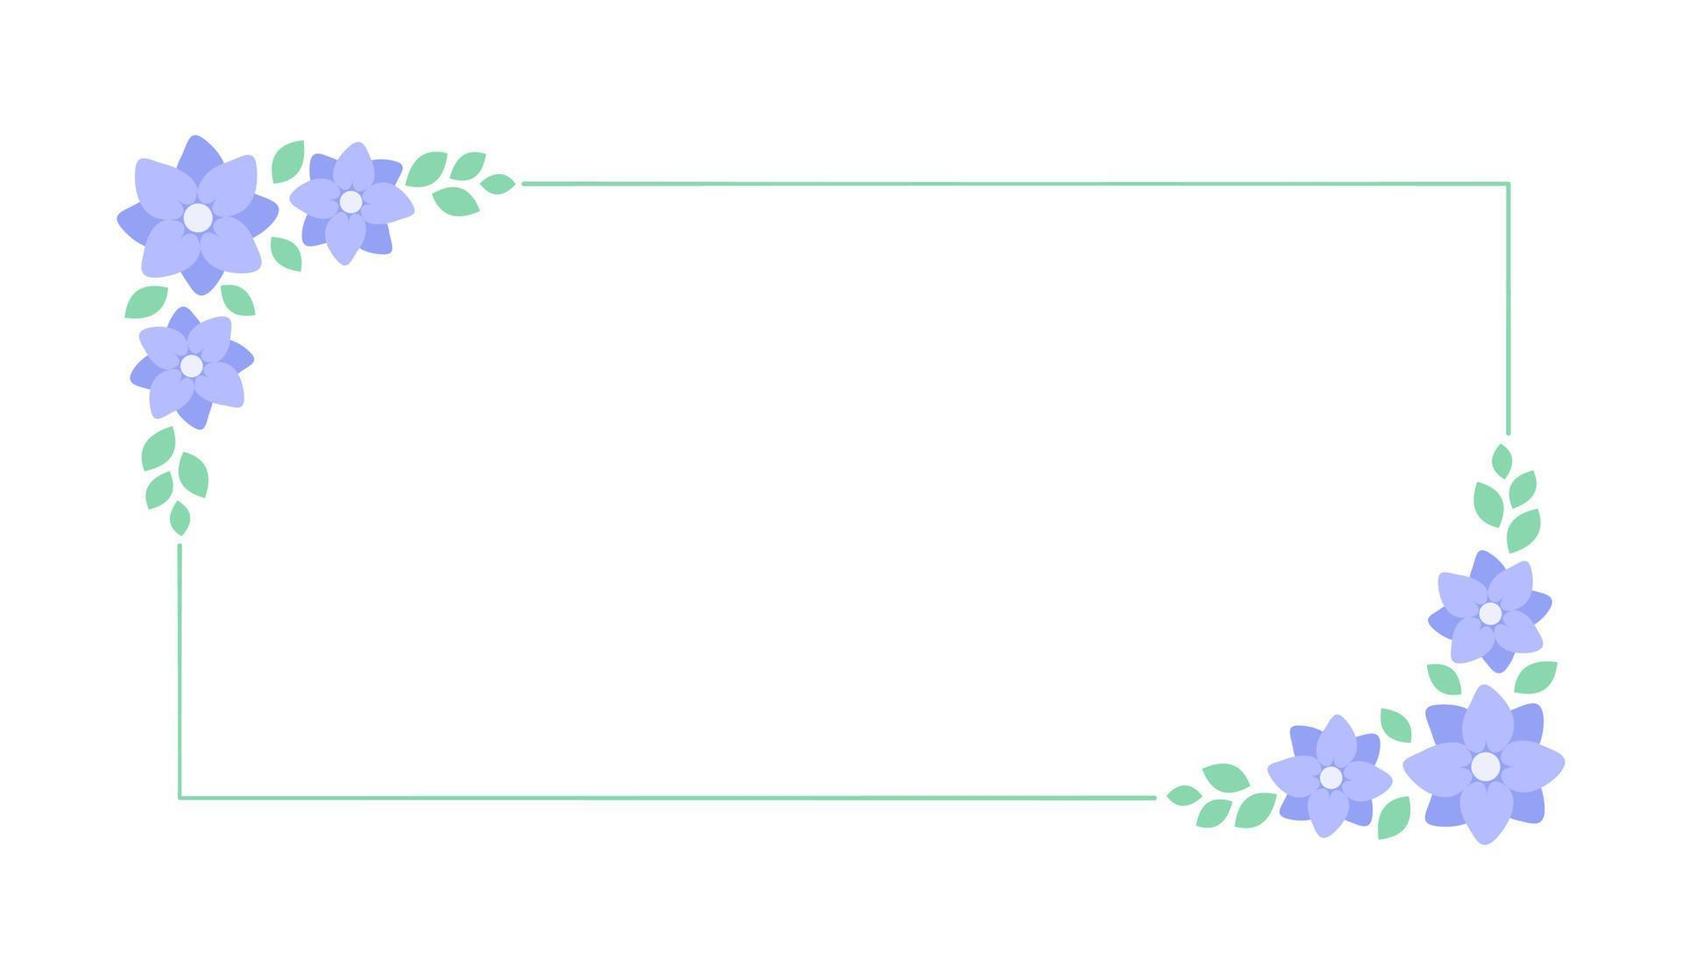 rektangel lavendel- blommig ram. botanisk blomma gräns vektor illustration. enkel elegant romantisk stil för bröllop evenemang, tecken, logotyp, etiketter, social media inlägg, etc.